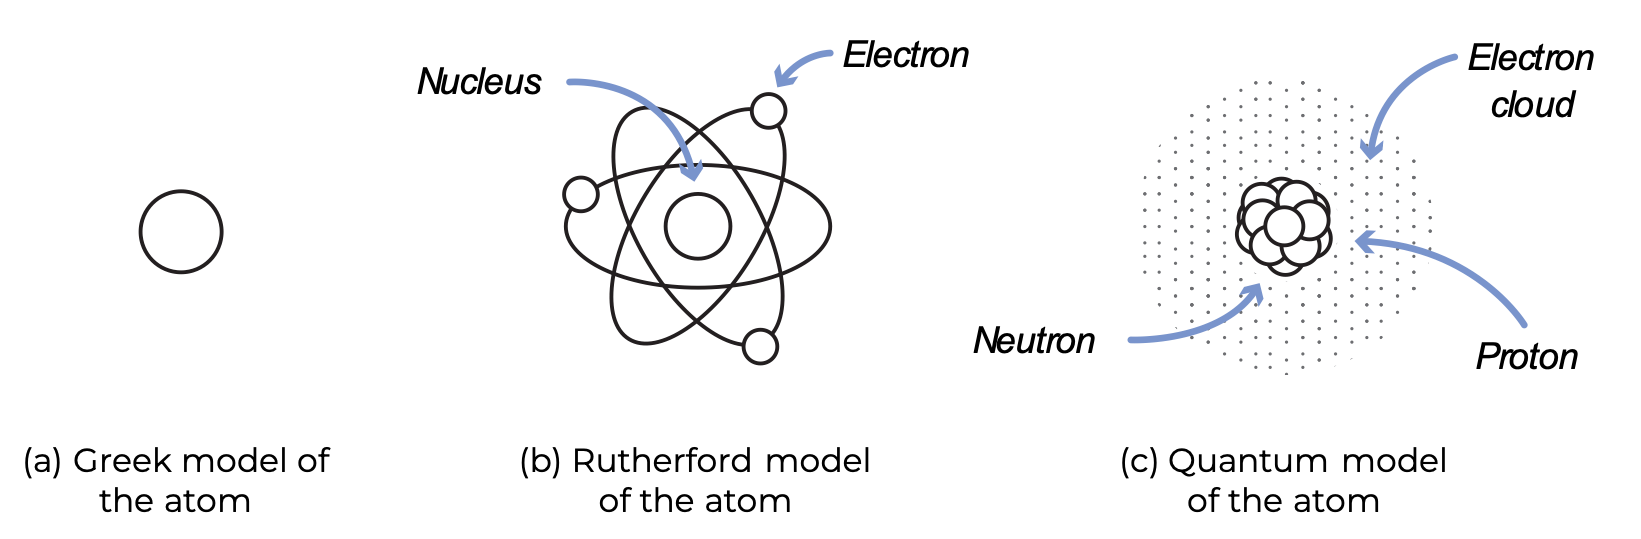 Scientific models atom rutherford einstein